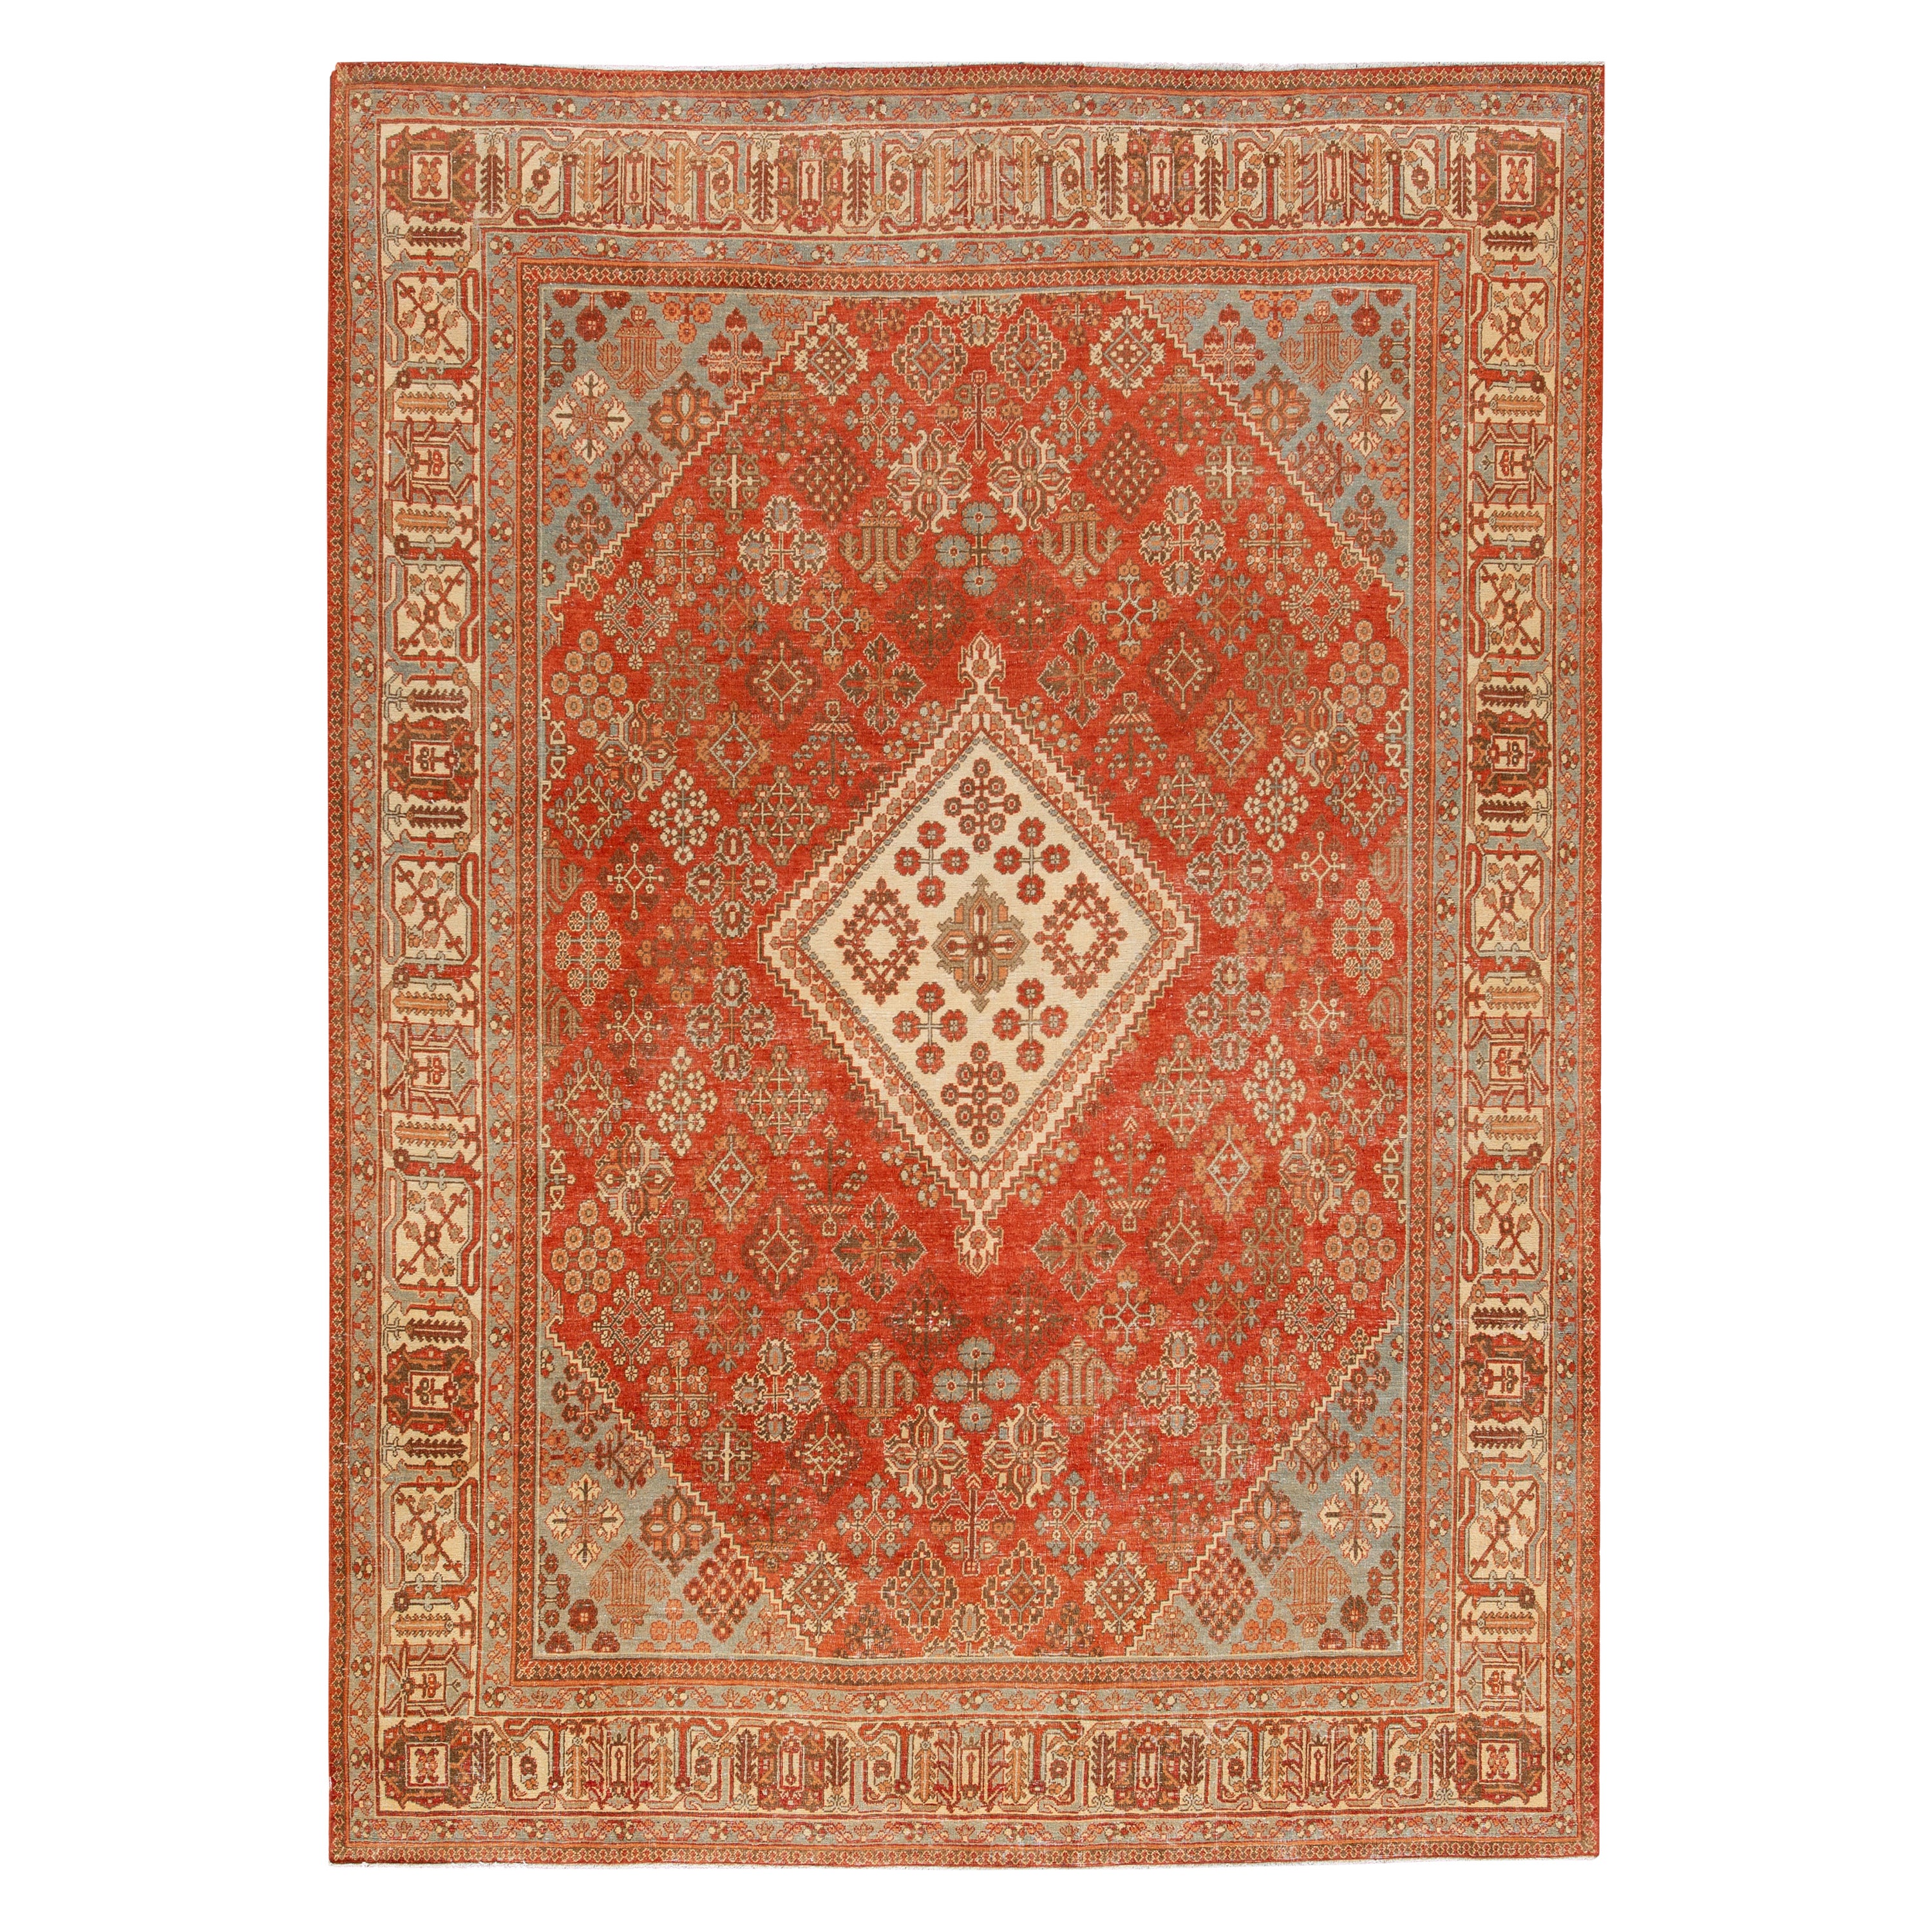 Medallion 1920s Handmade Josheghan Persian Wool Rug in Orange/Rust For Sale